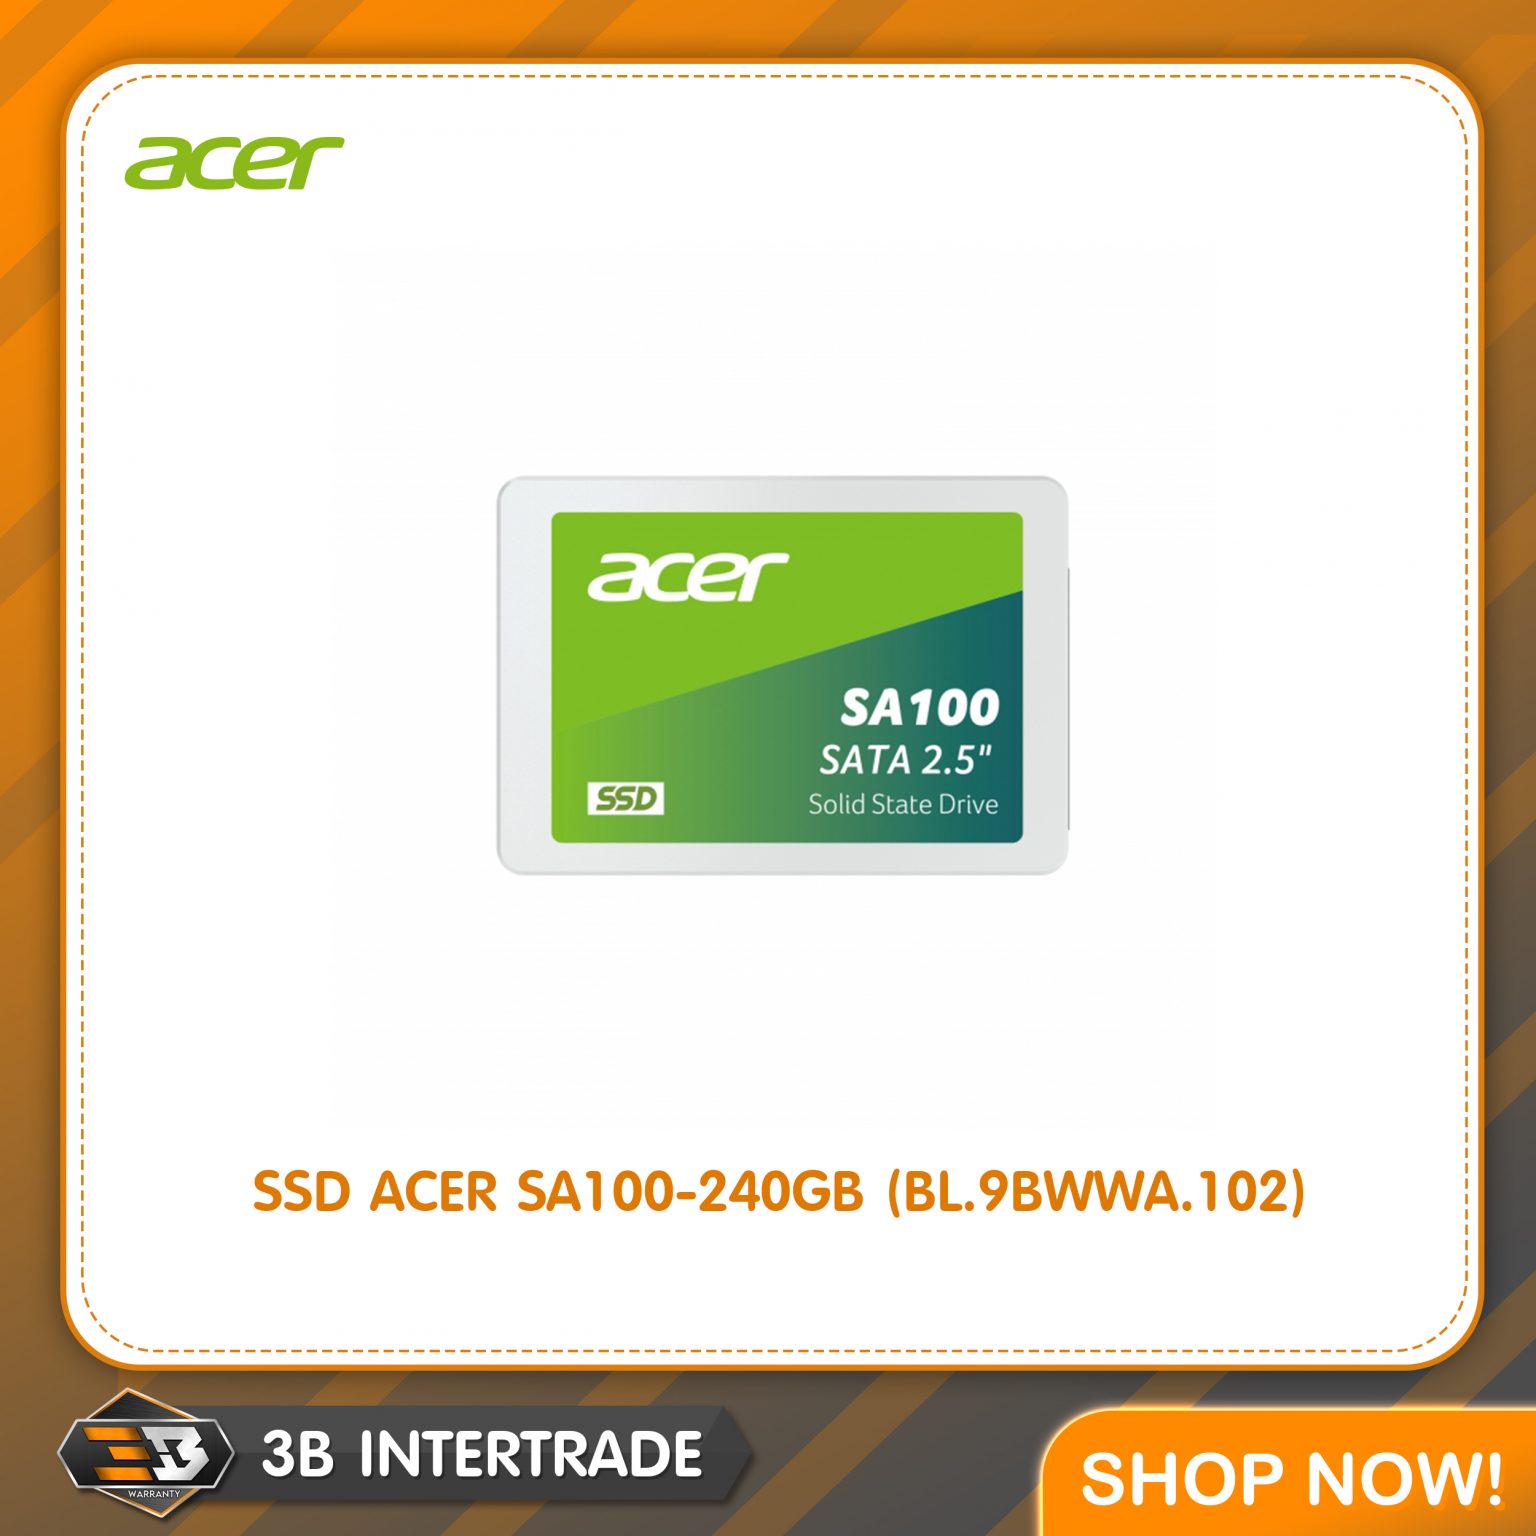 SSD ACER SA100-240GB (BL.9BWWA.102)